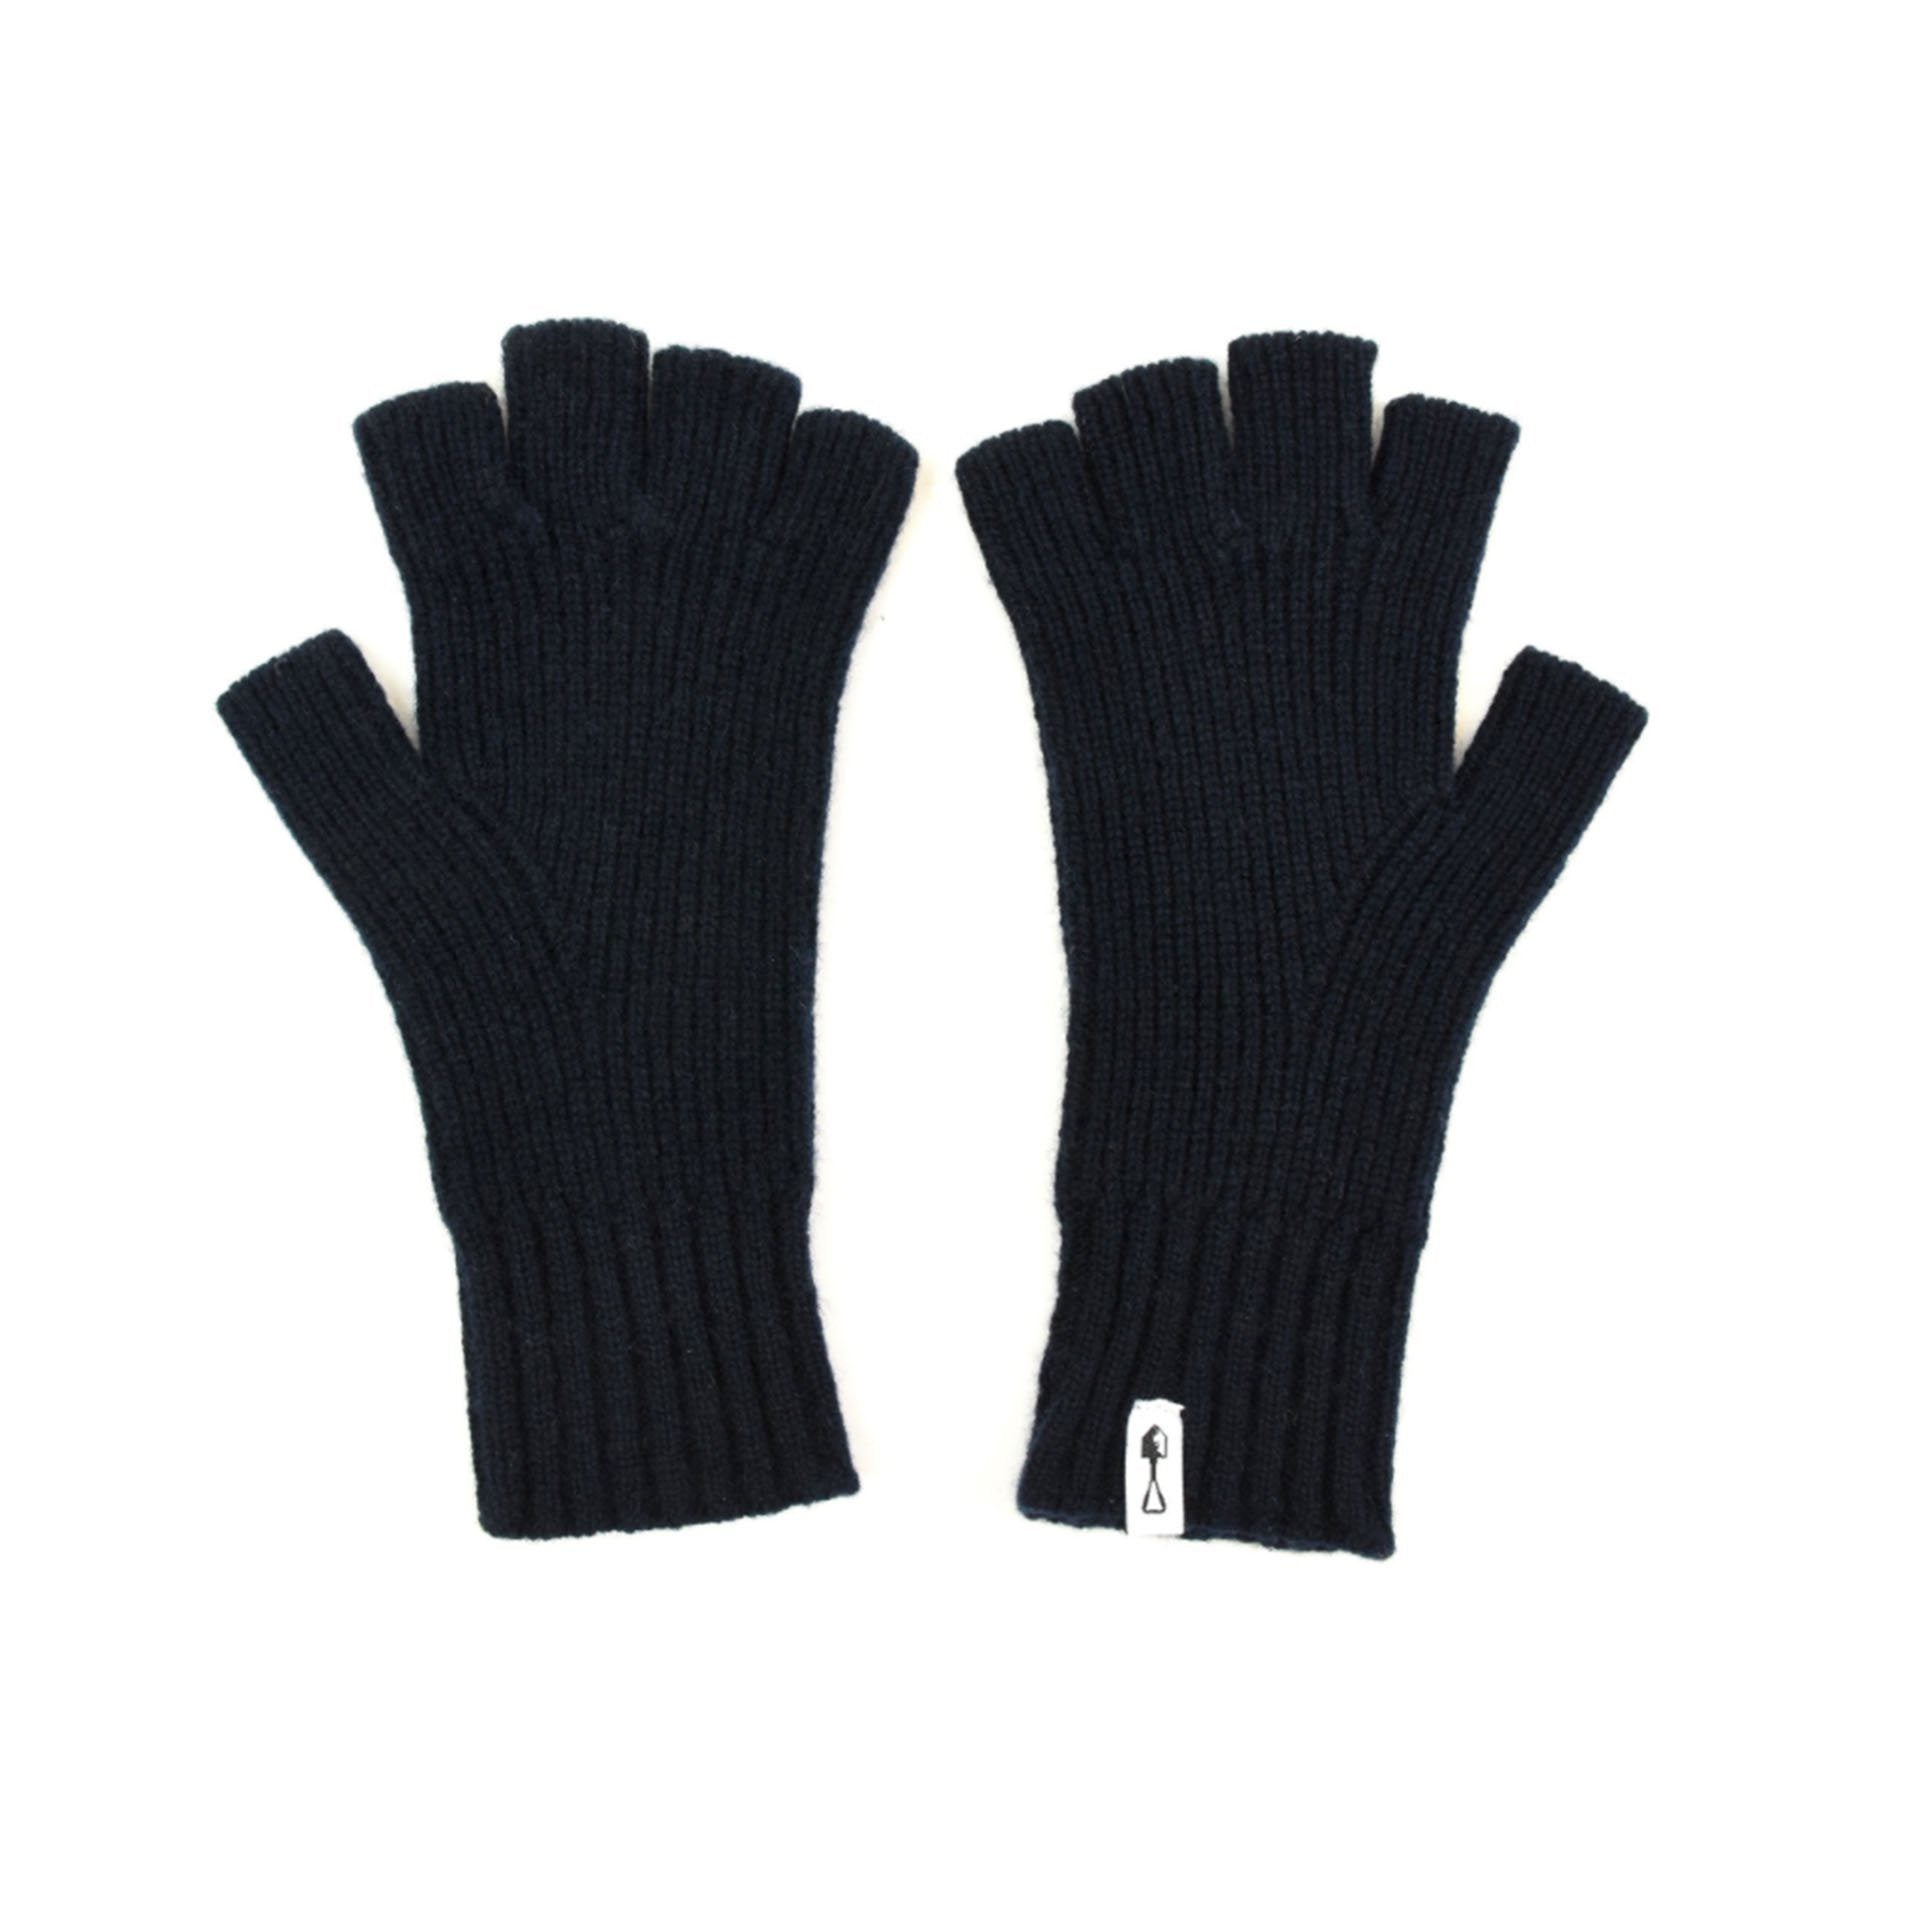 Fingerless Gloves - Fingerless Gloves - American Trench